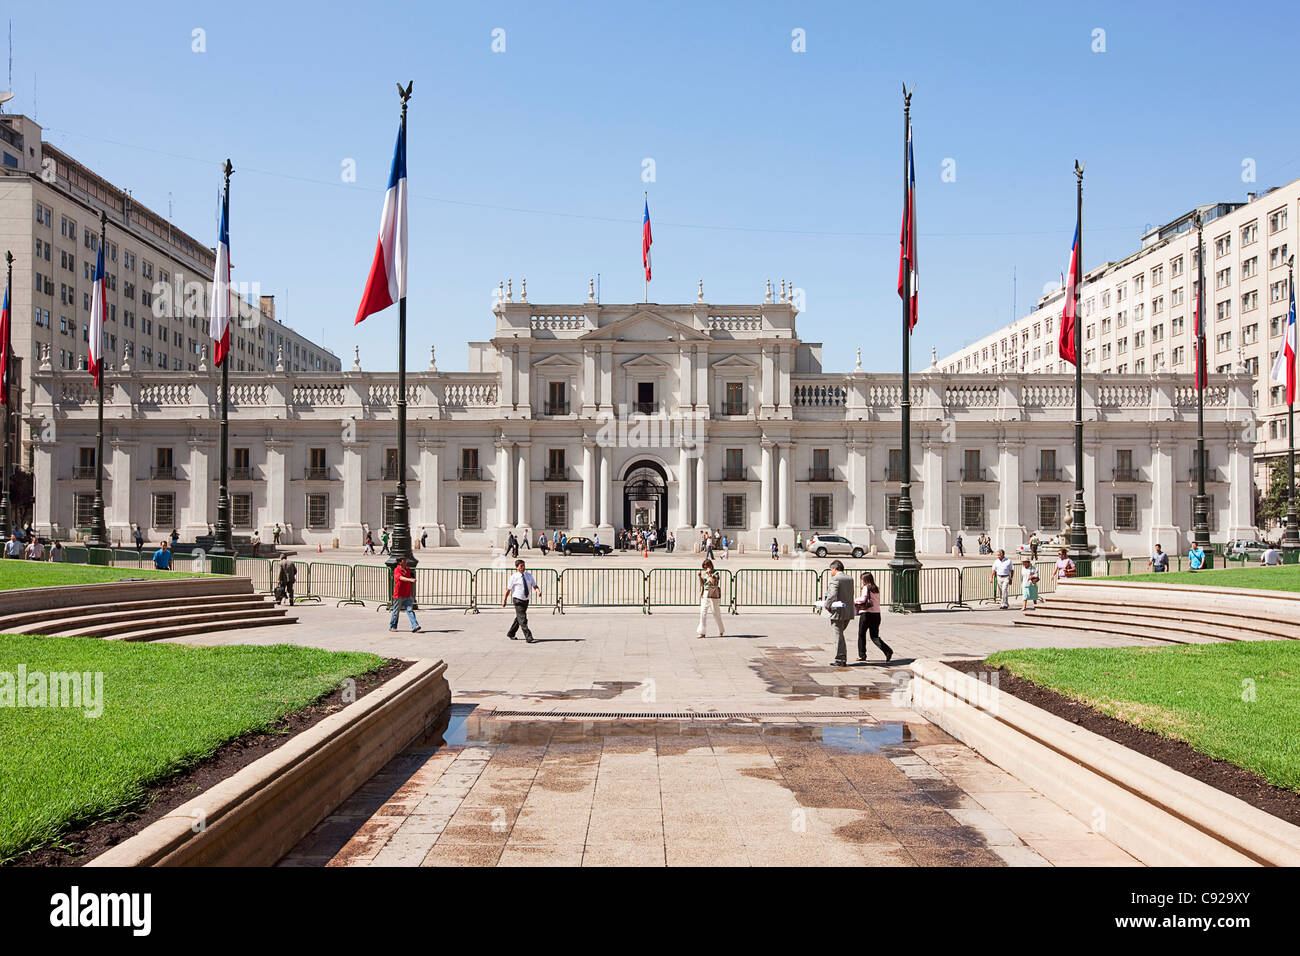 Chile, Santiago, Plaza De La Constitución, Palacio De La Moneda, Sitz des Präsidenten der Republik Chile Stockfoto